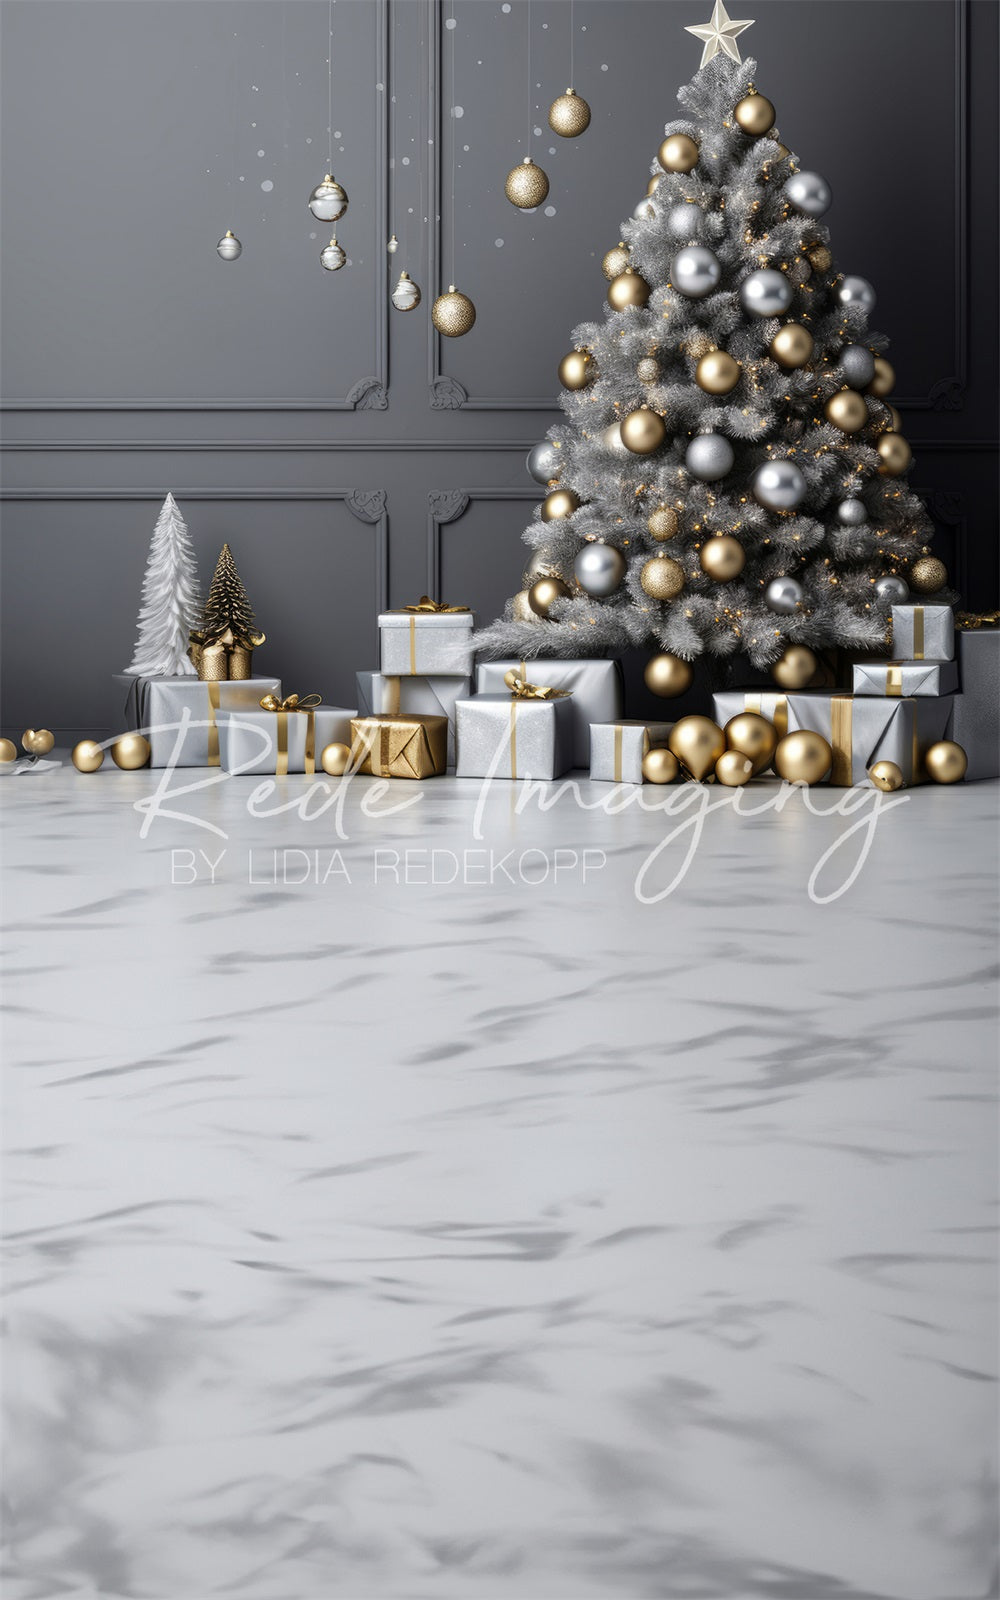 Sfondo natalizio argento e oro Sweep creato da Lidia Redekopp